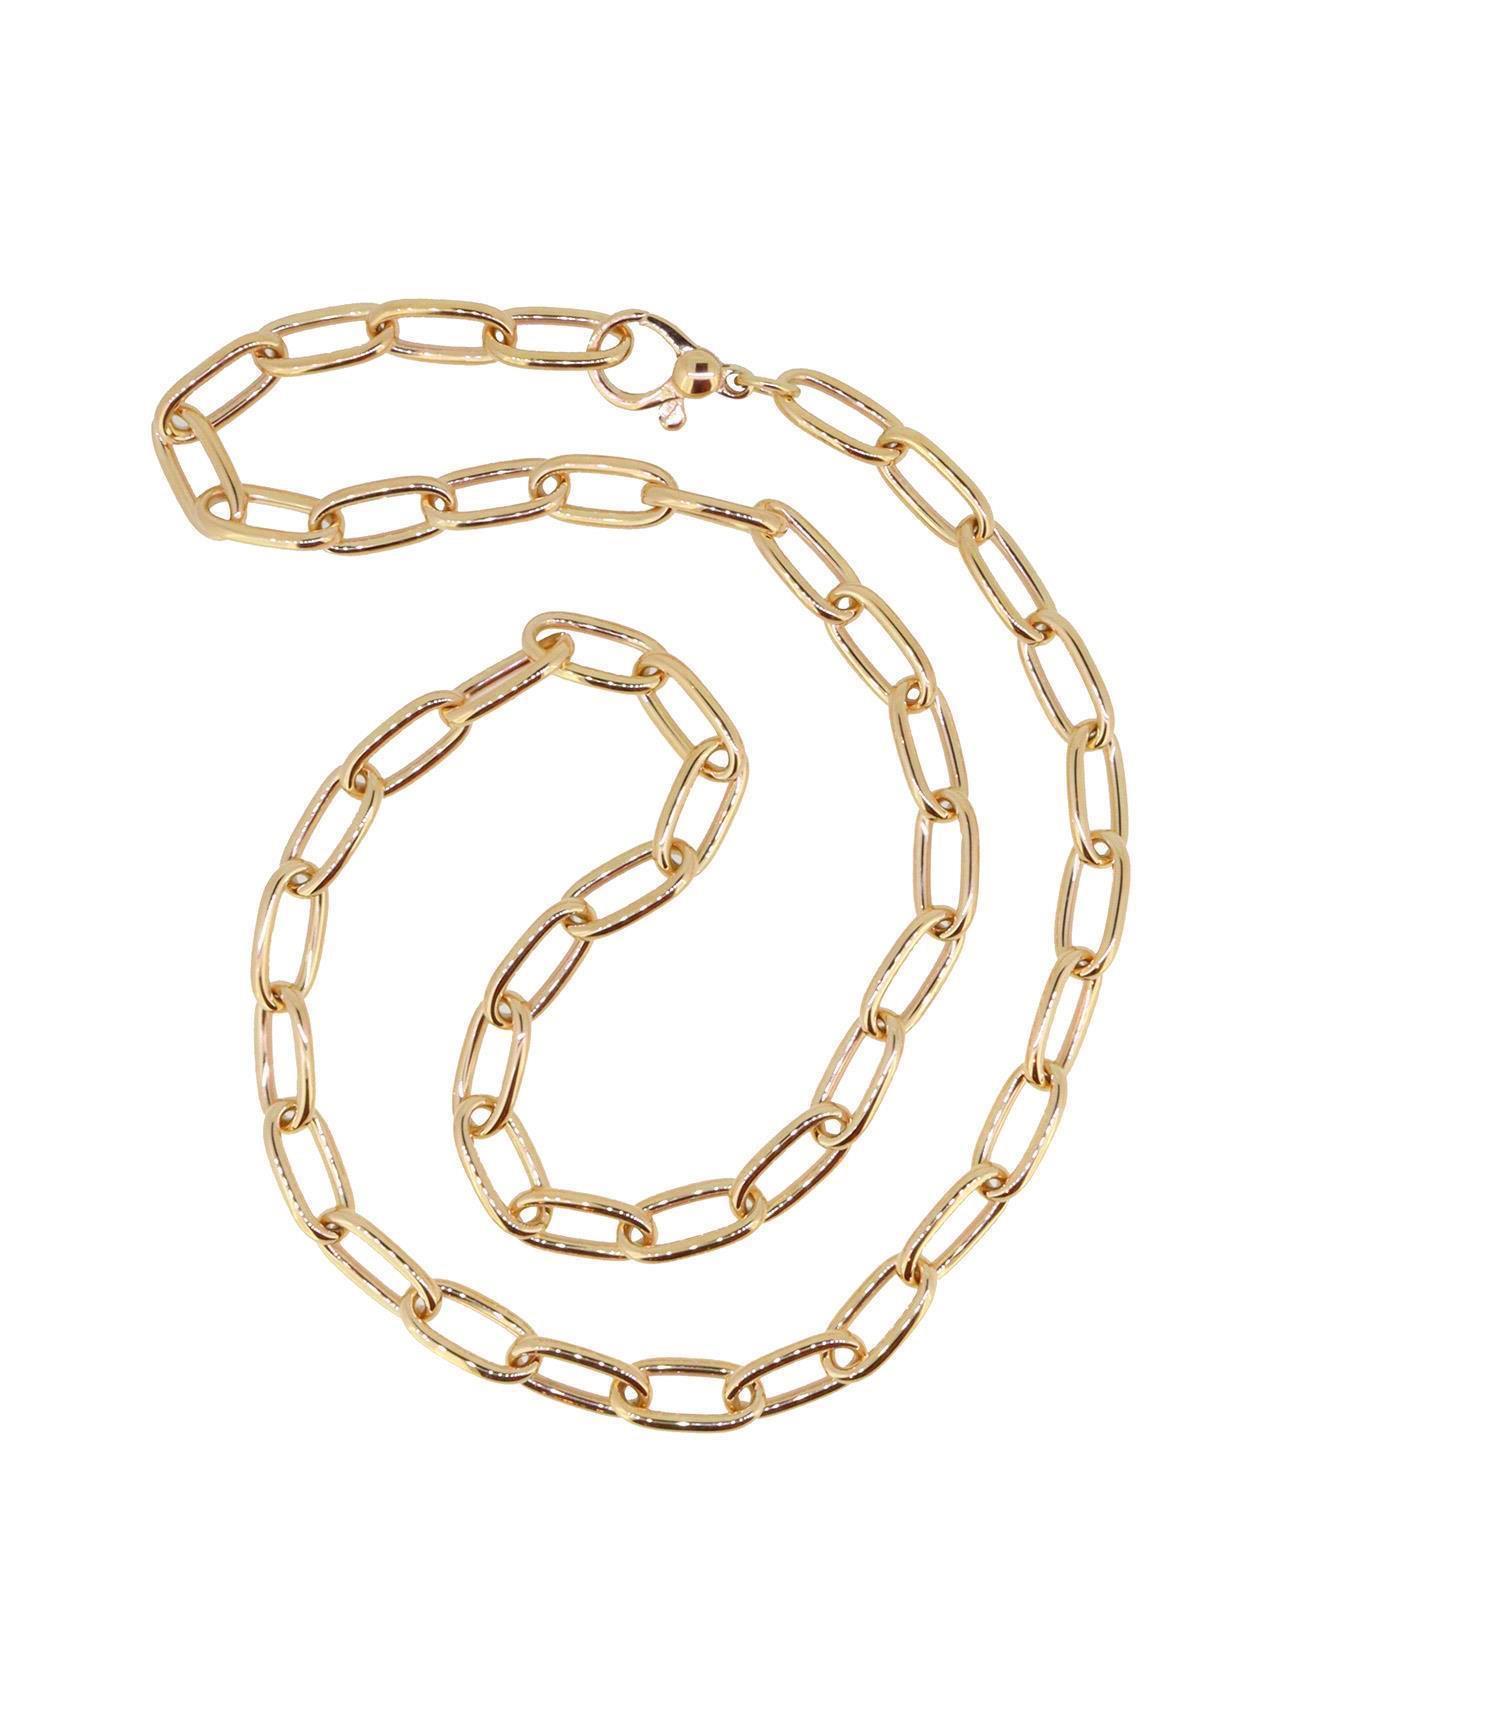 Halskette 45cm 18kt Roségold - Individuelle Marken - 835GX0500rg_45